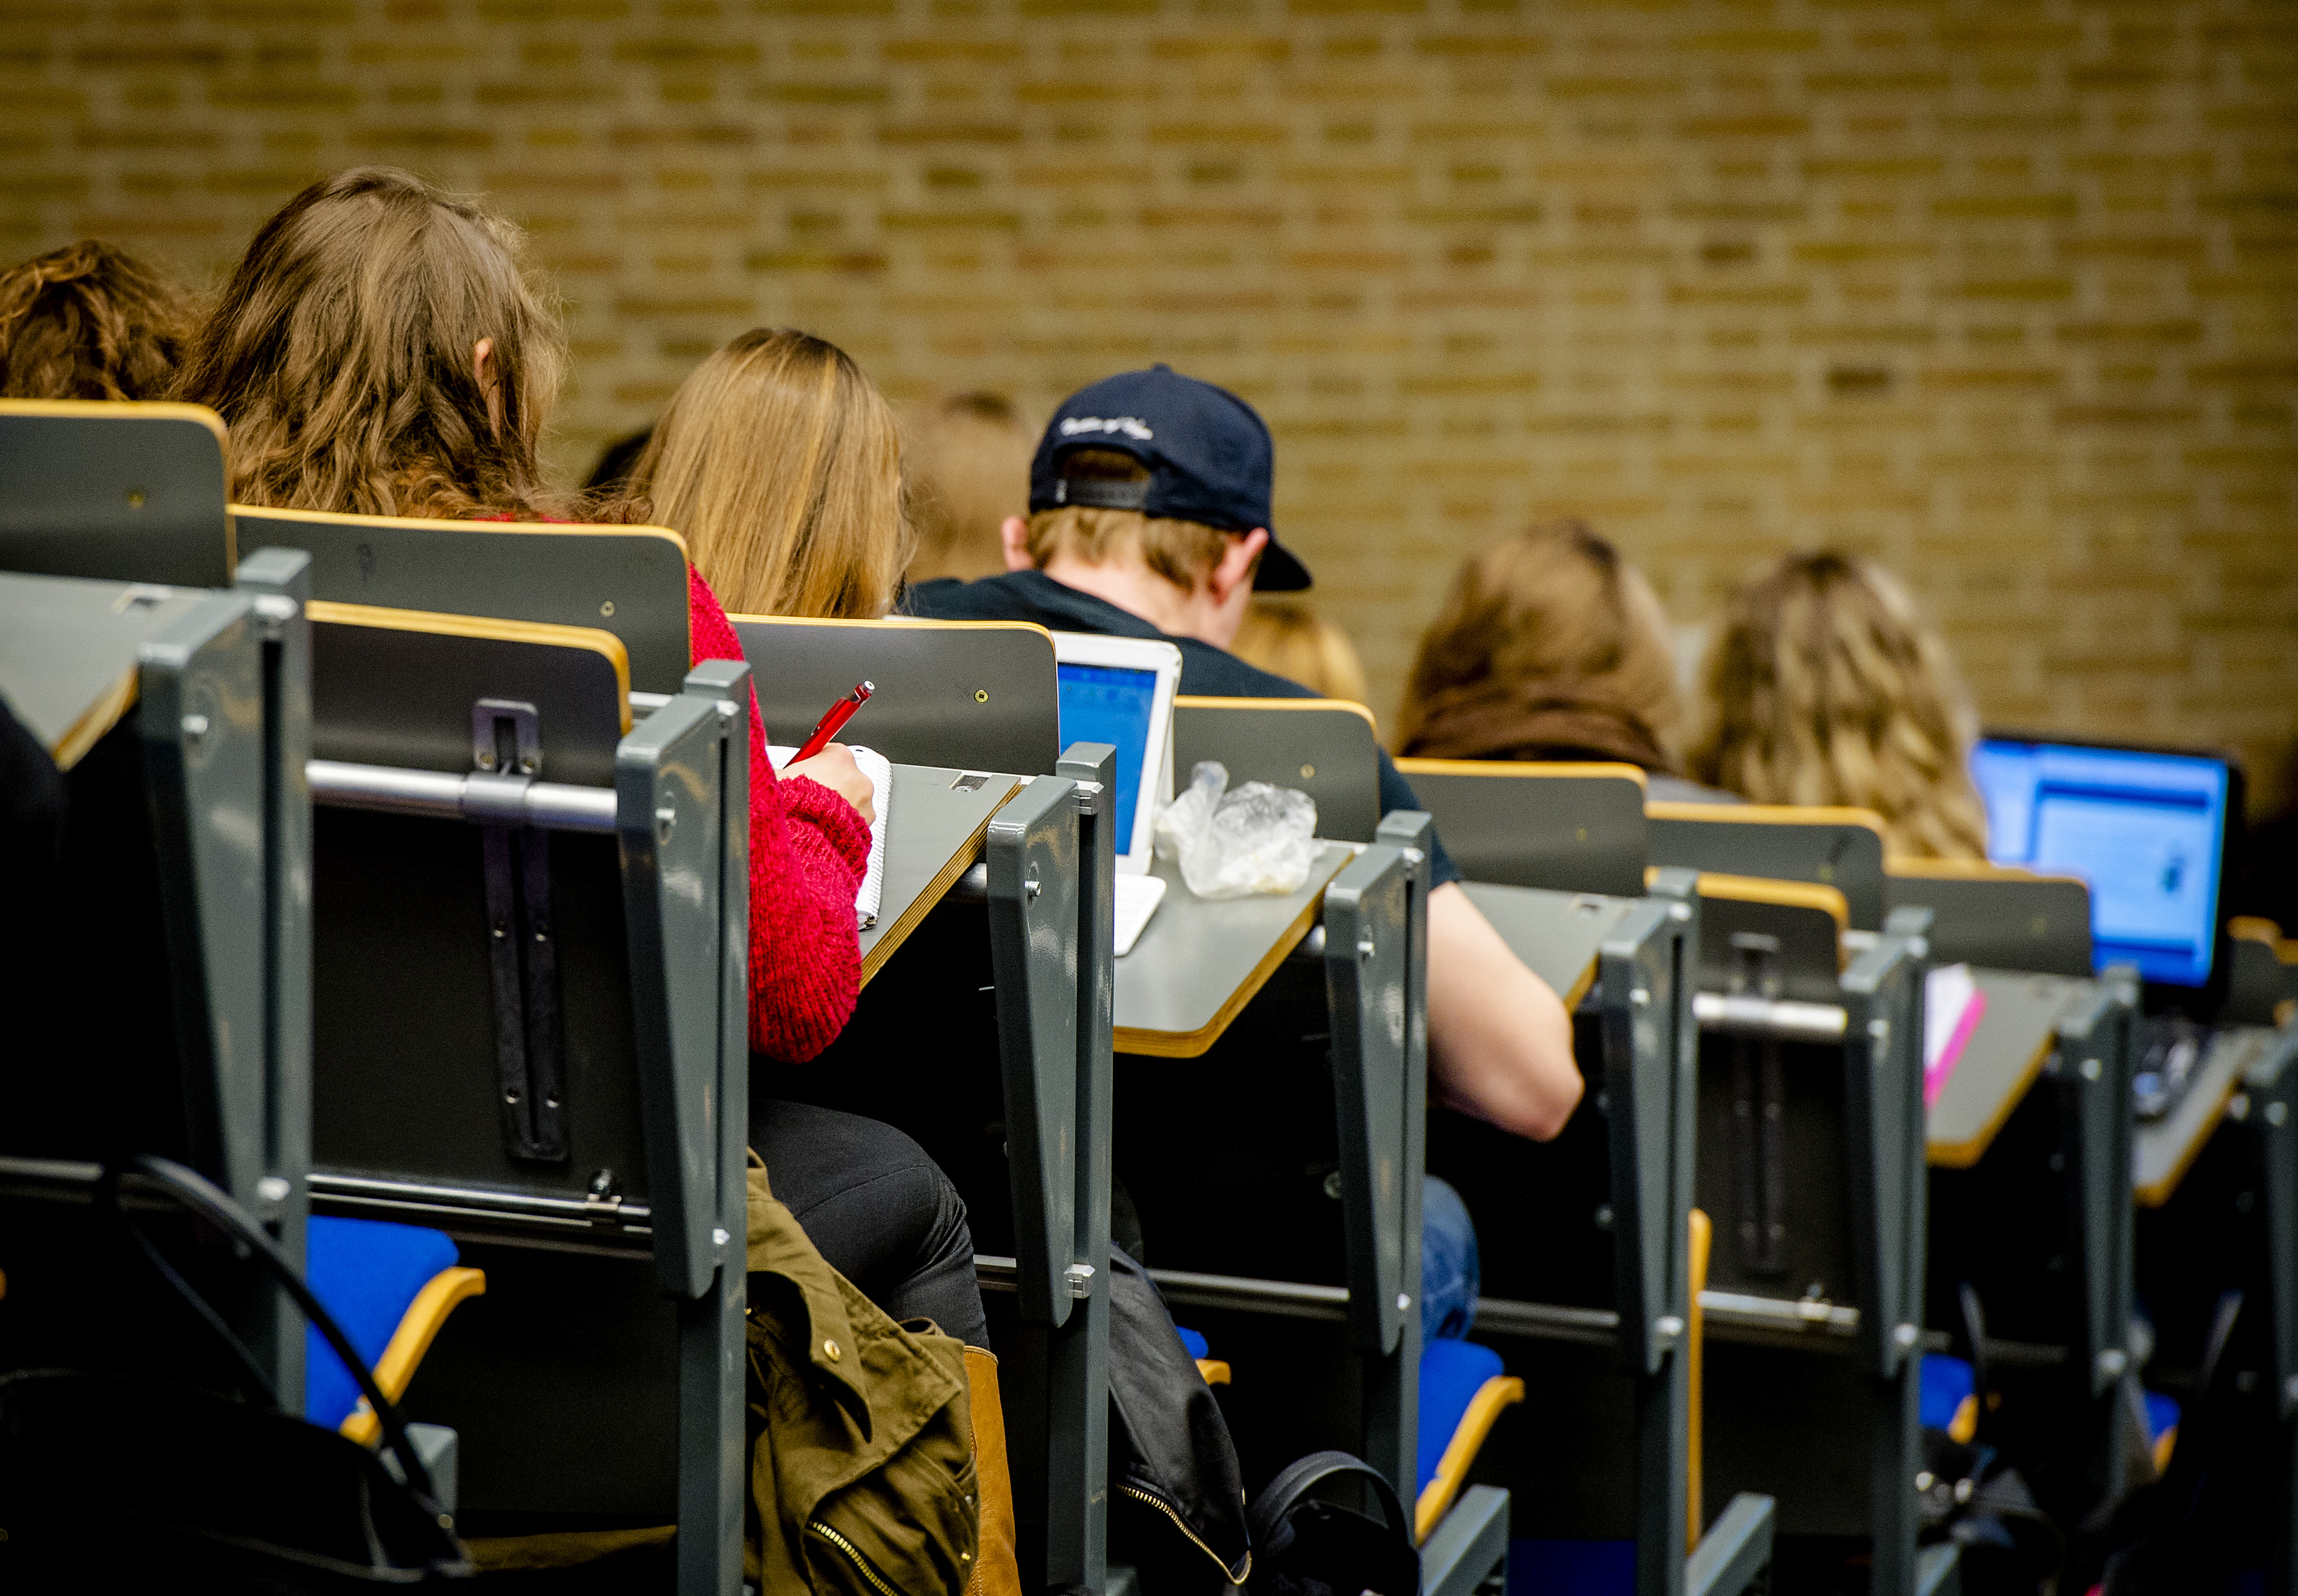 Collegezaal van de Universiteit Tilburg. Foto ANP / Robin van Lonkhuijsen